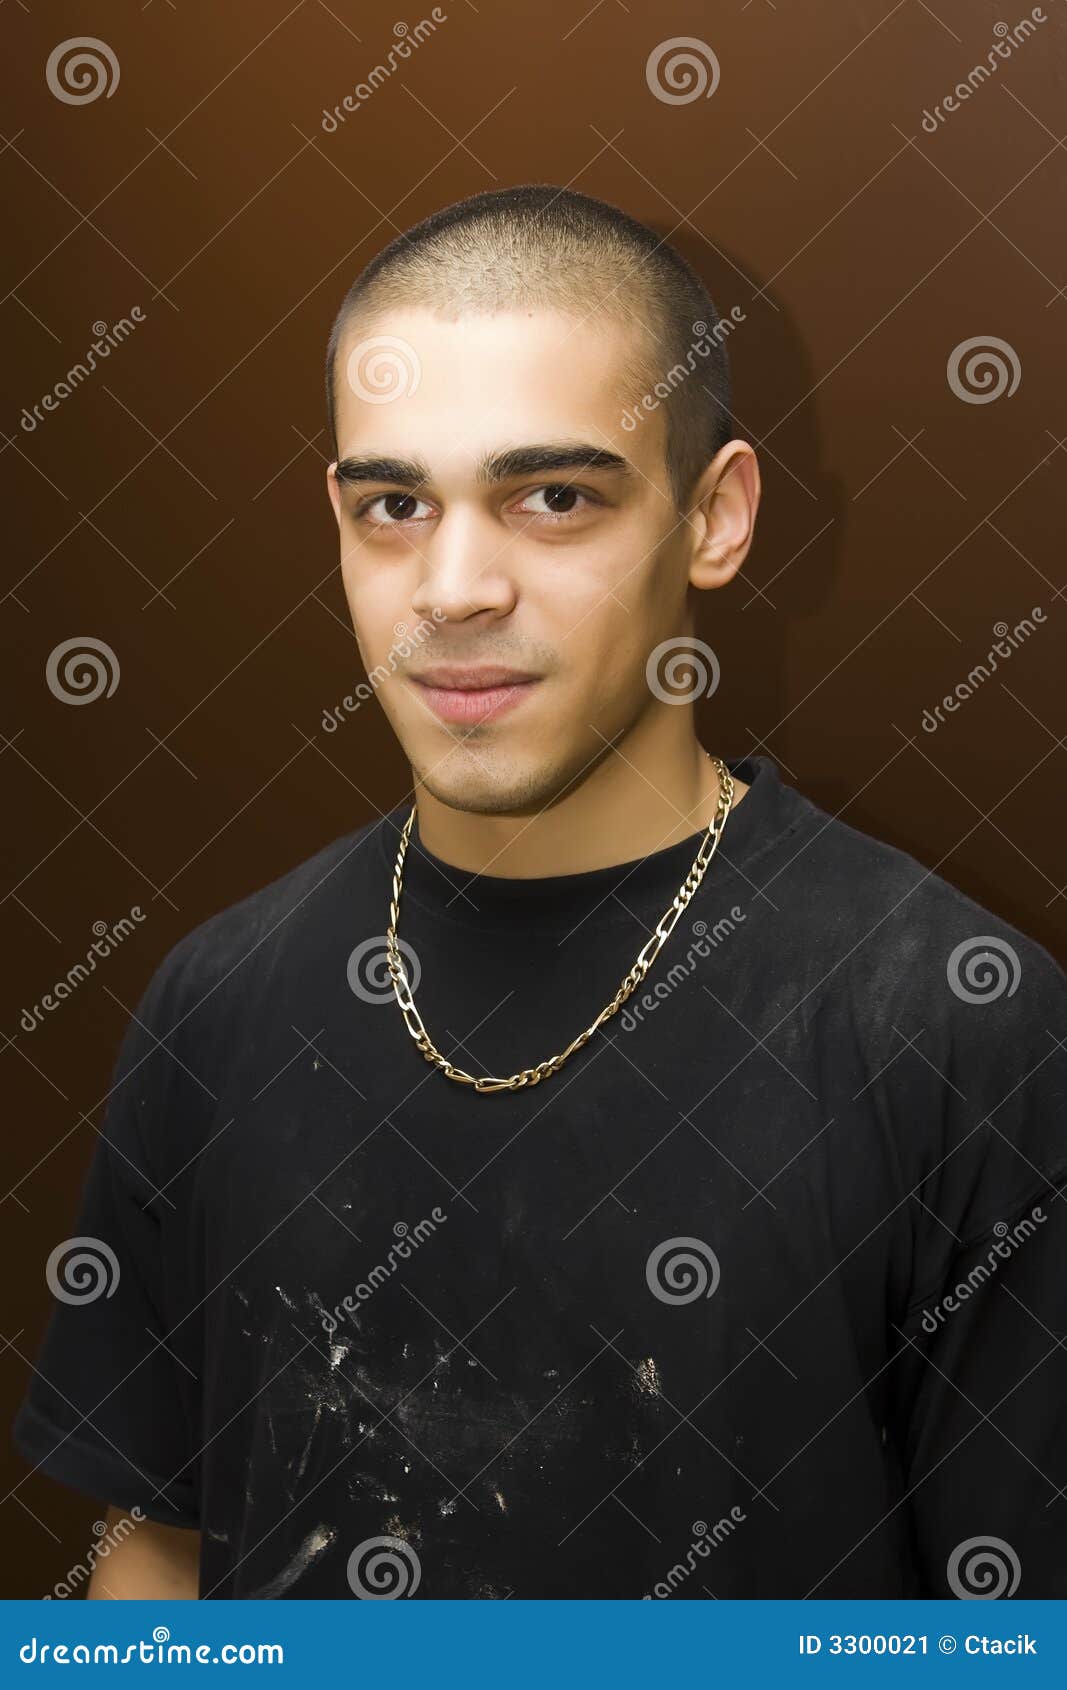 young man portrait